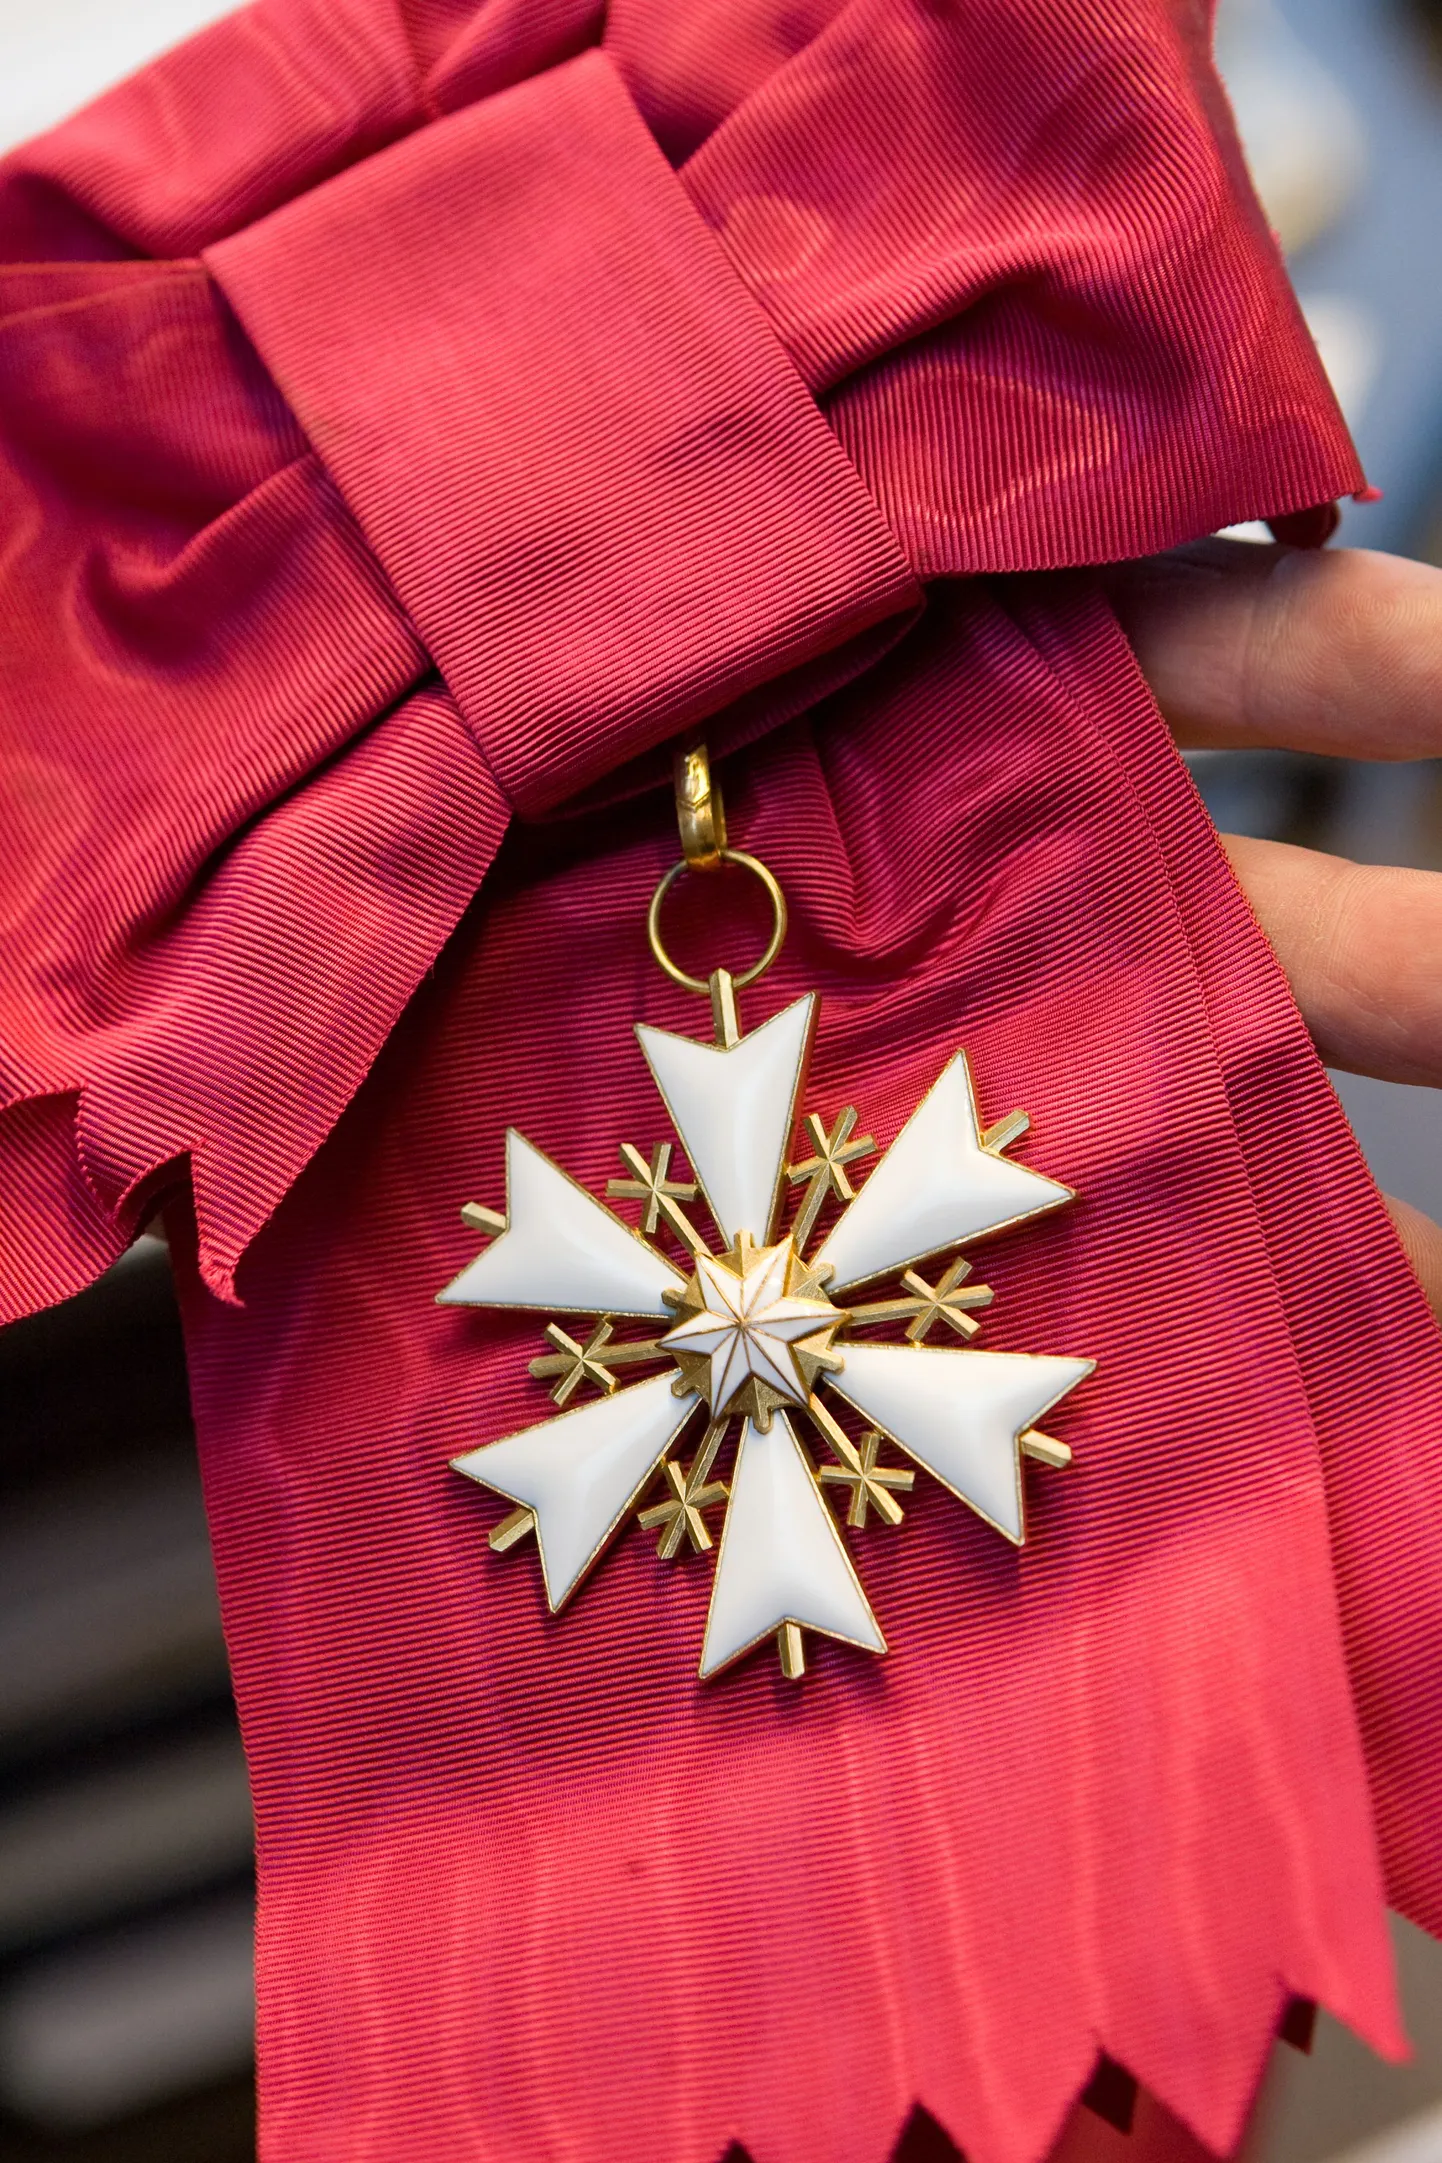 Одна из государственных наград Эстонии - Орден Белой звезды I класса.